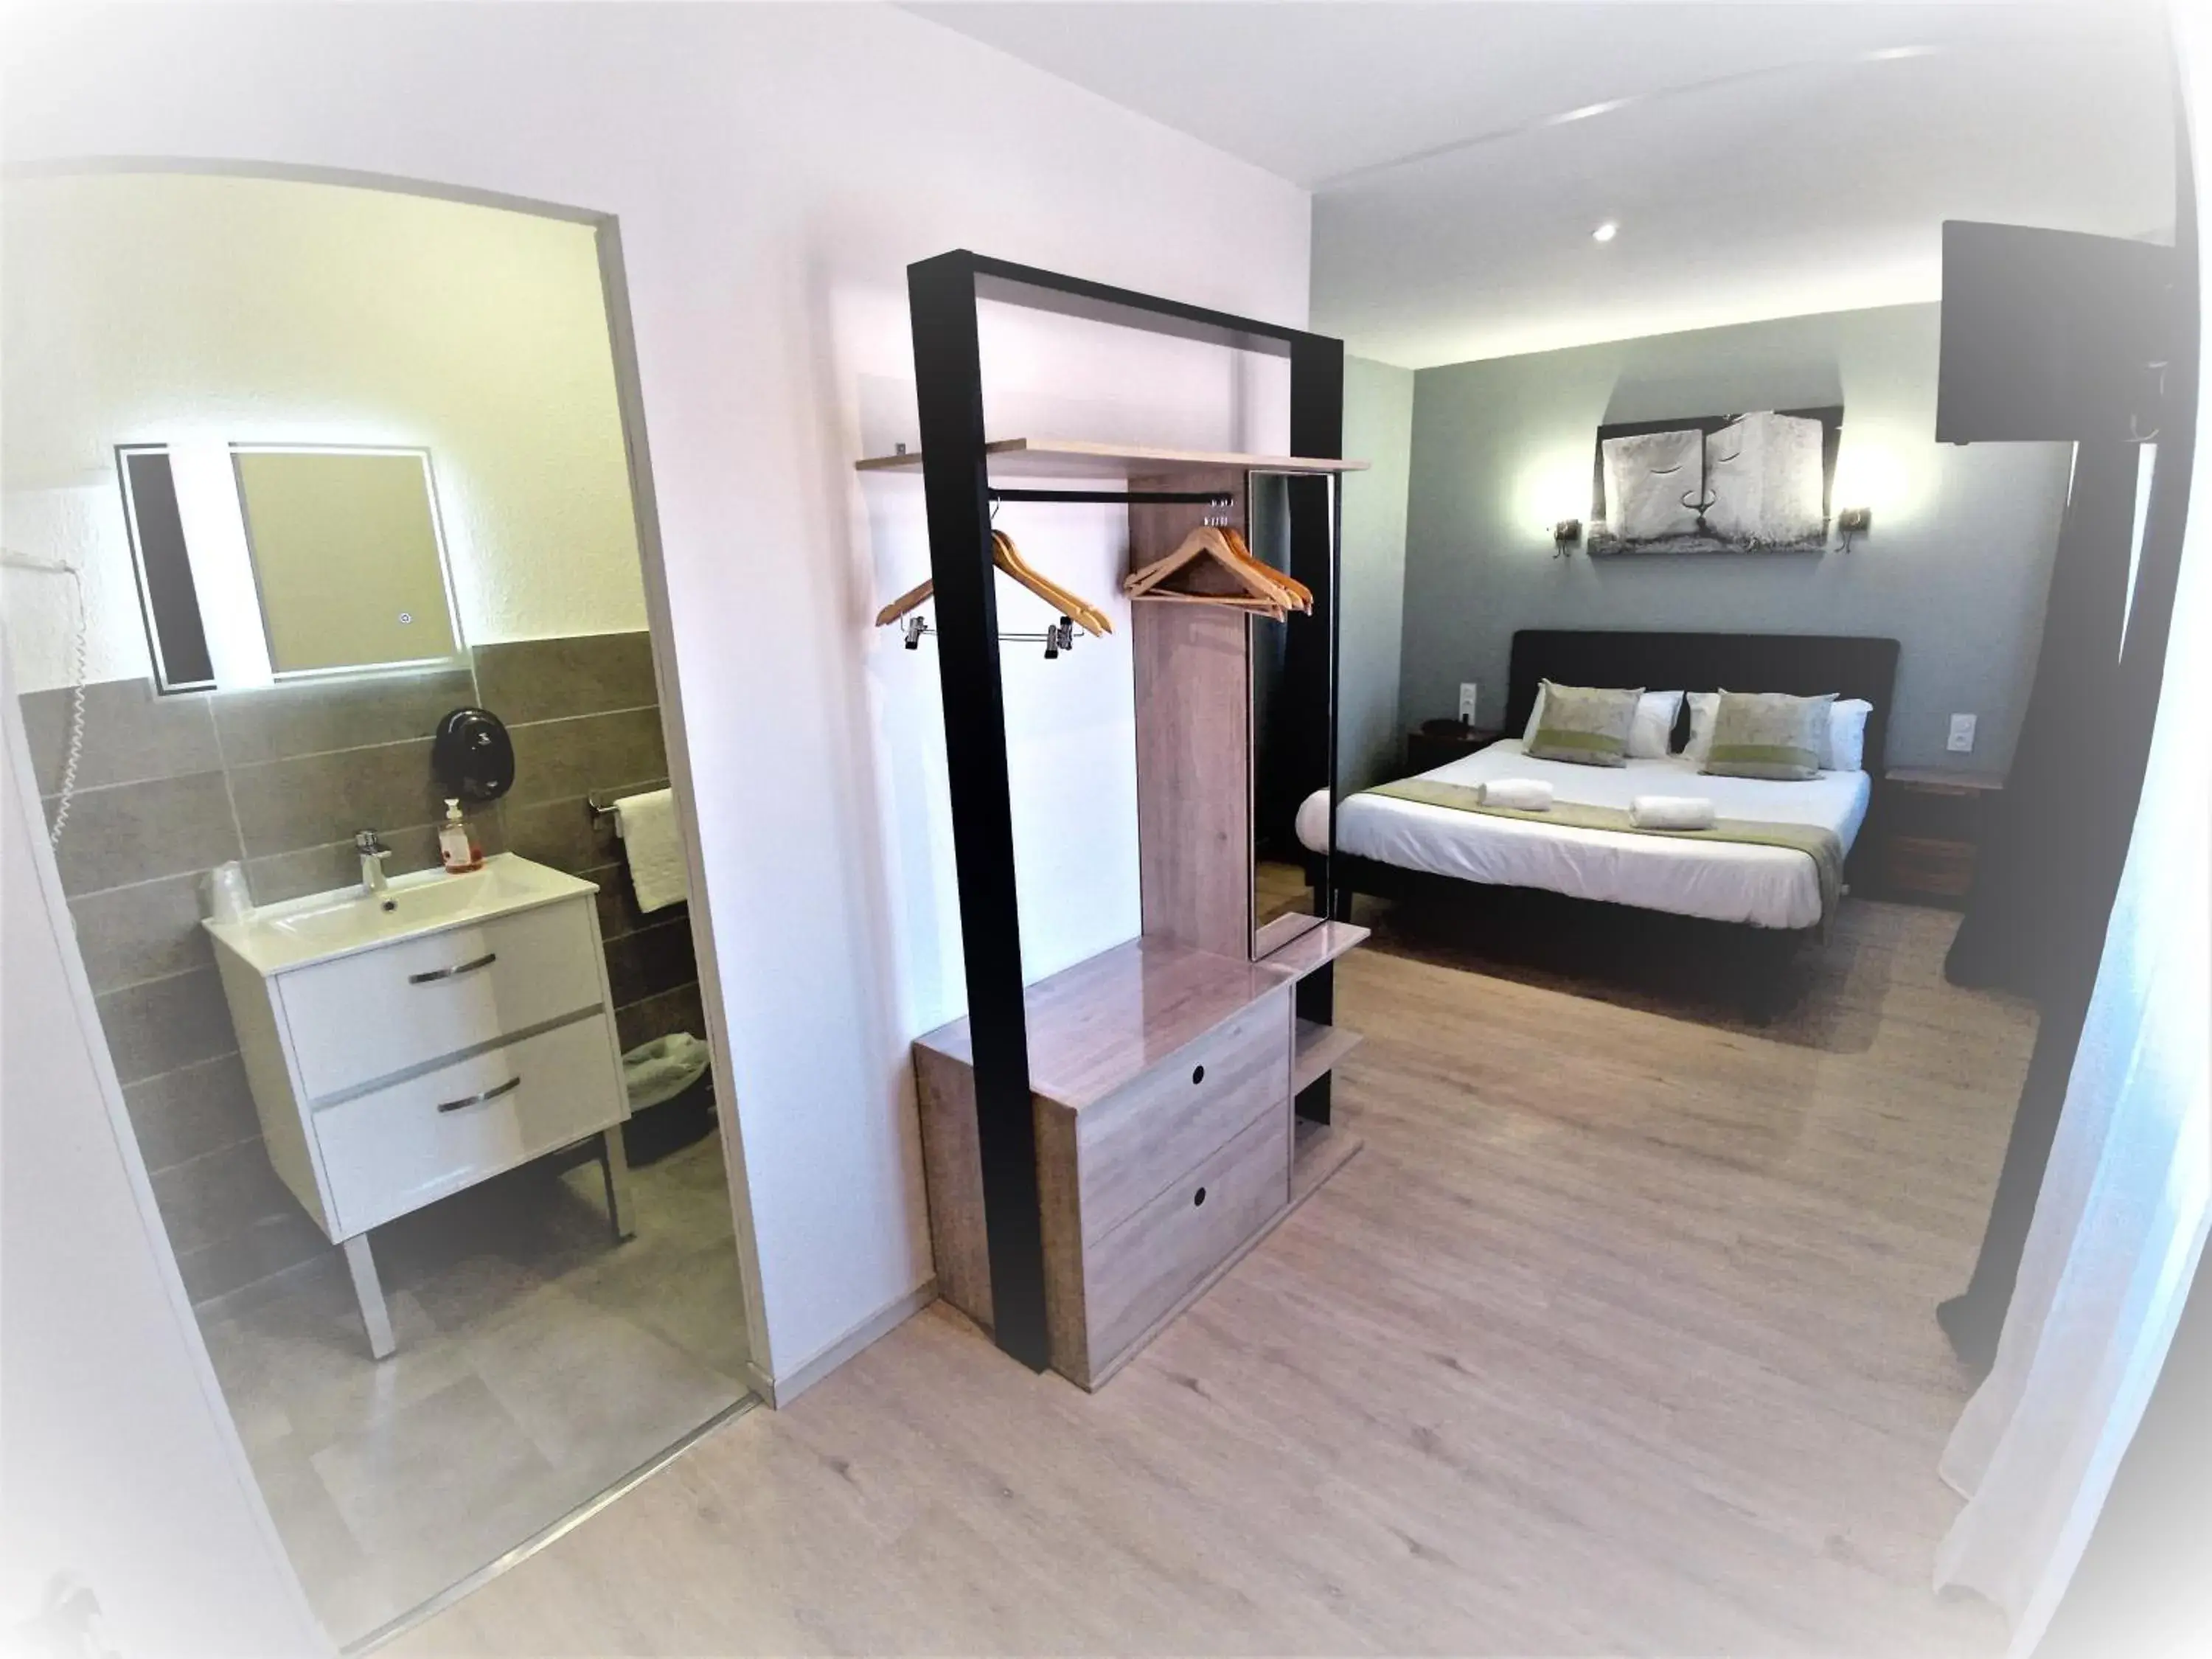 Bedroom in Hotel Astoria